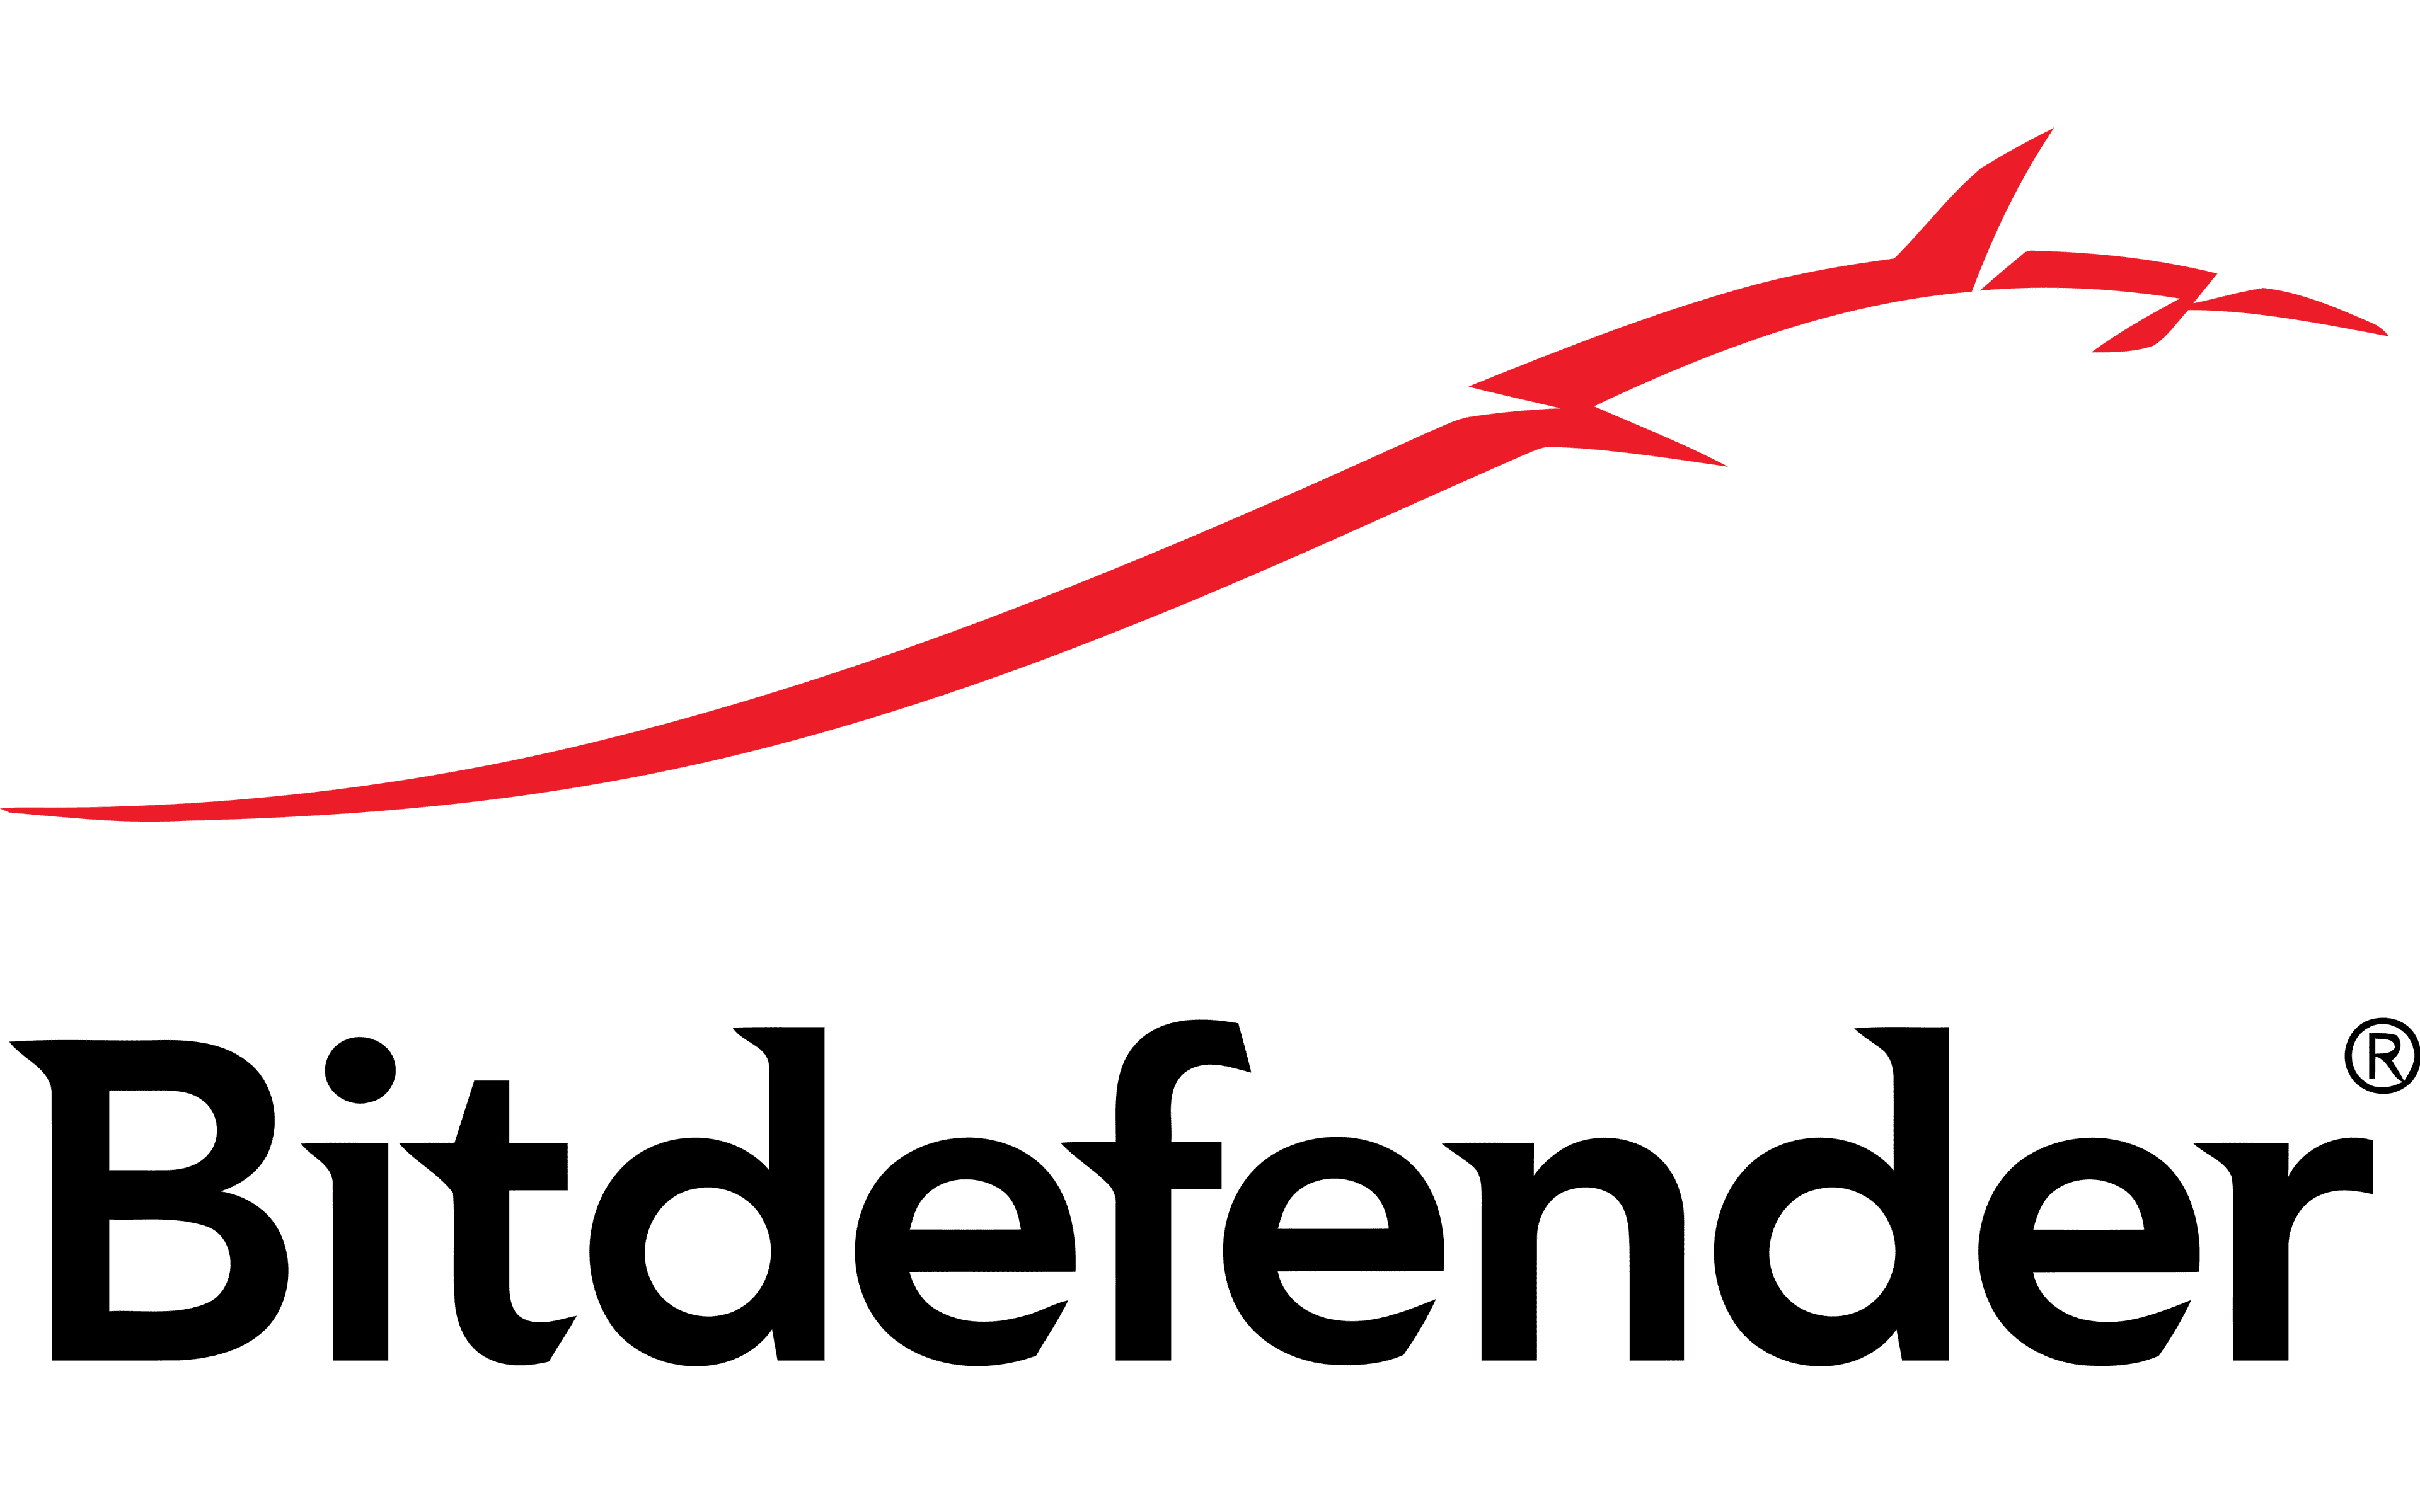 Bitdefender Partner Logo